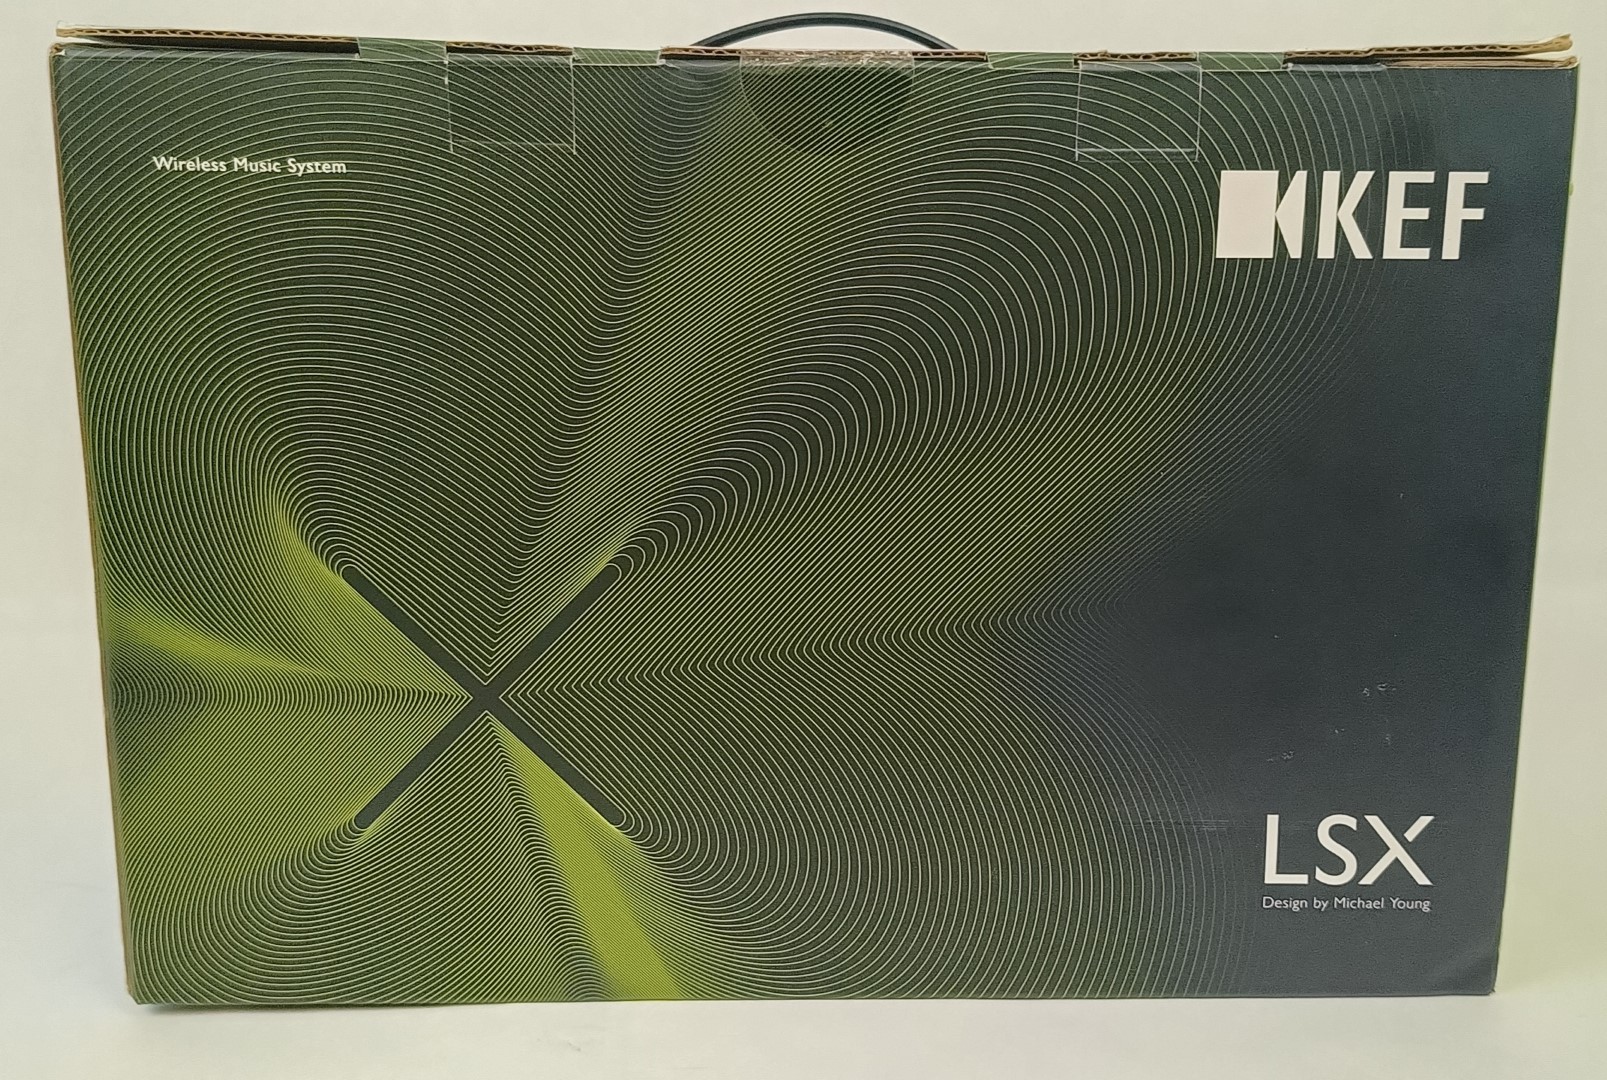 KEF LSX Wireless Music System (Pair) - White - BN